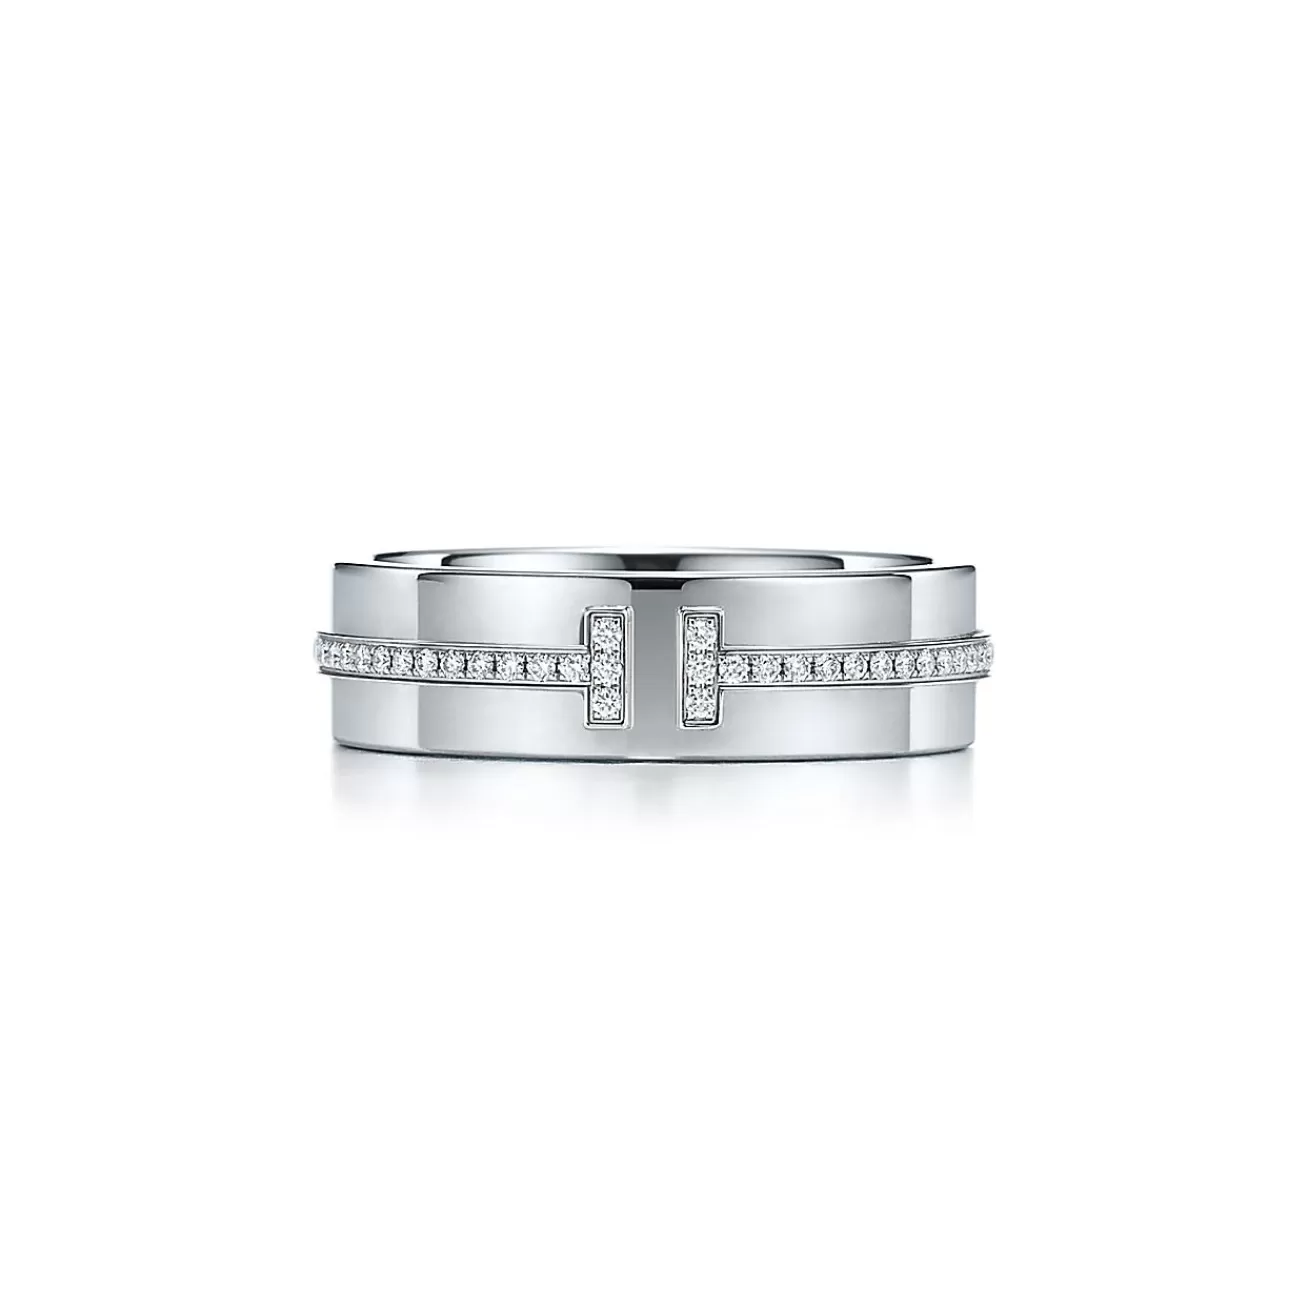 Tiffany & Co. Tiffany T wide diamond ring in 18k white gold, 5.5 mm wide. | ^Women Rings | Men's Jewelry